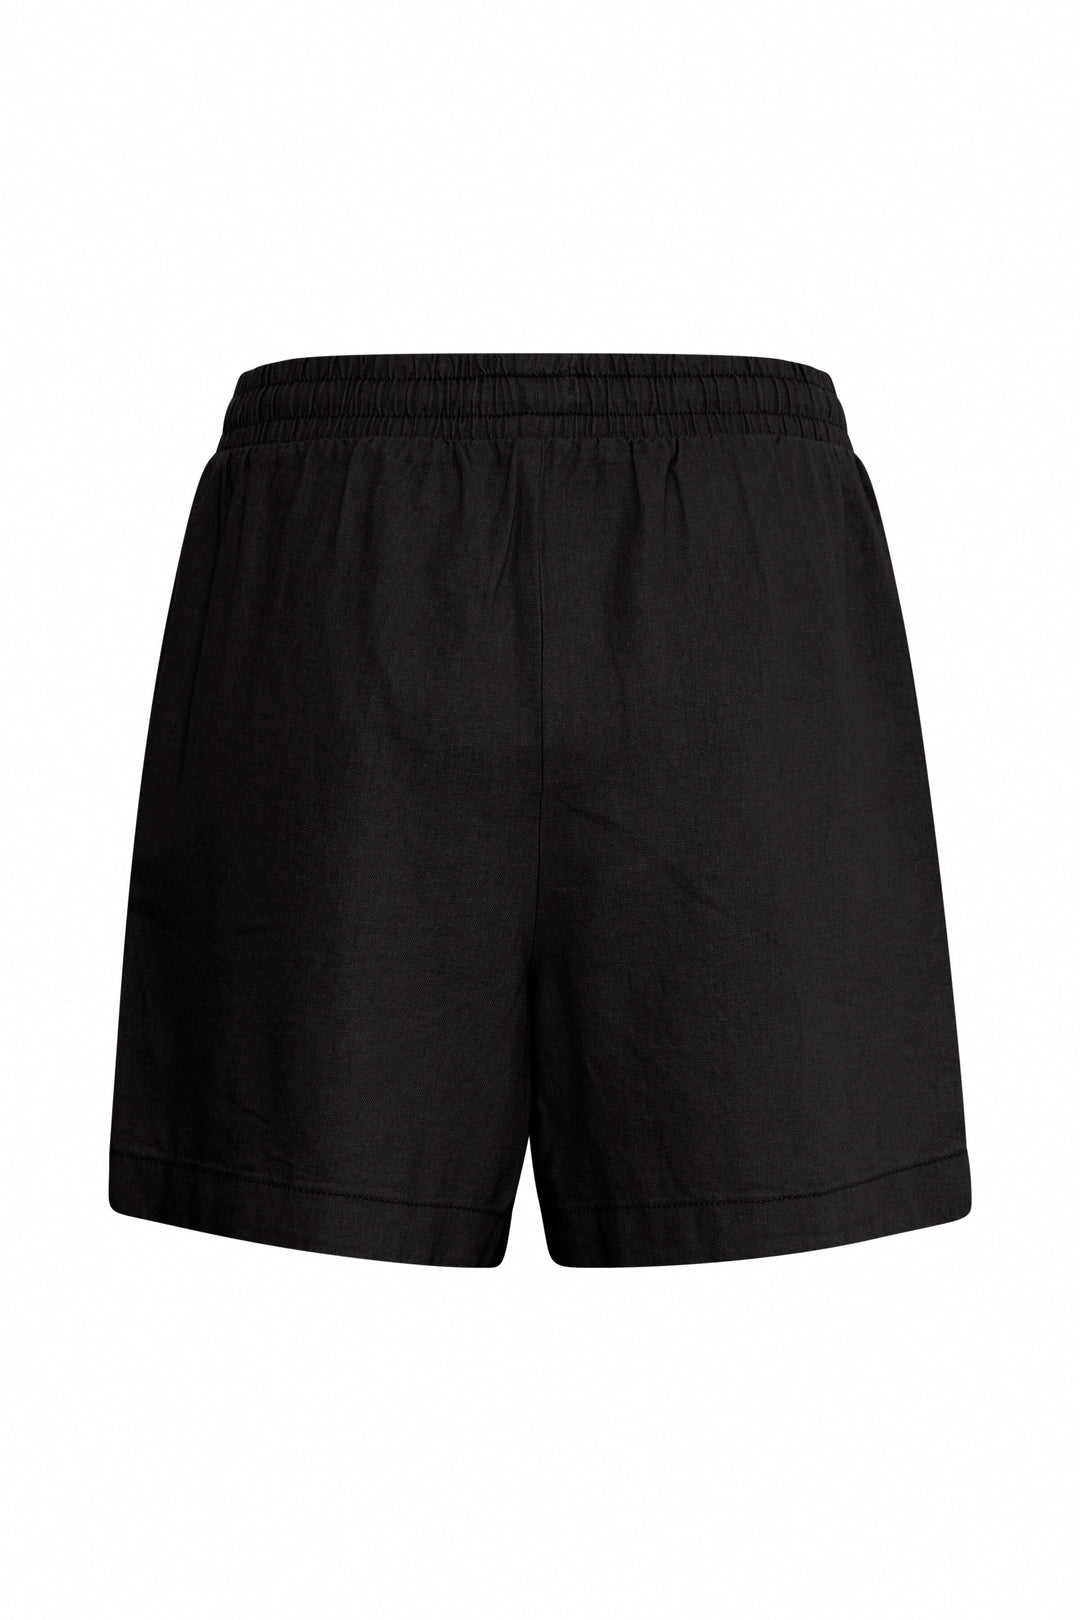 Ichi - Ihlino Sho - Black Shorts 